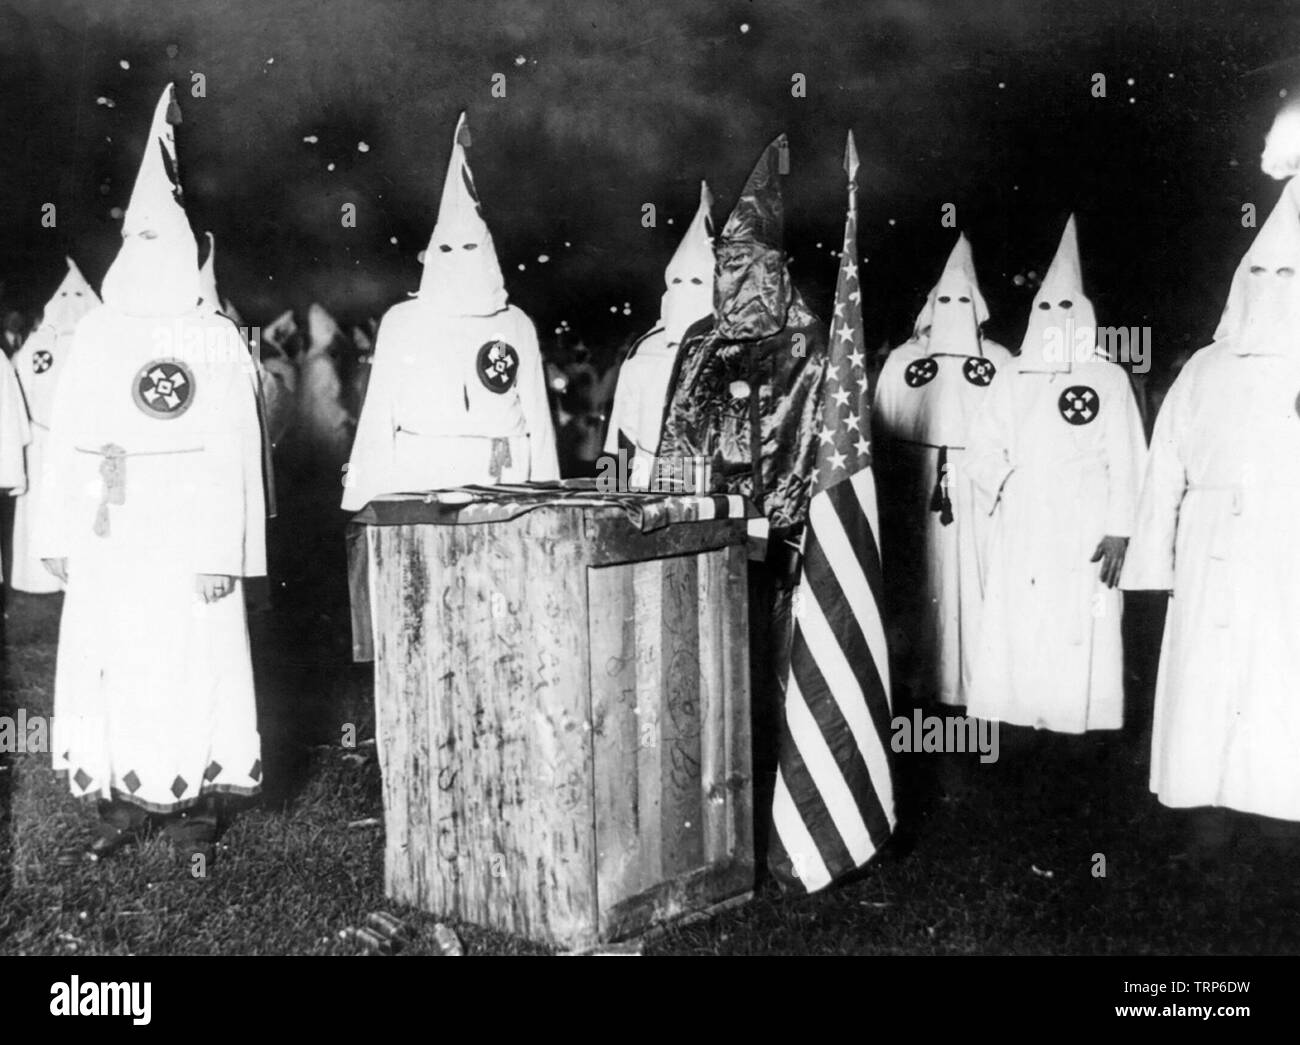 Altar mit K Adler im schwarzen Gewand bei einem Treffen von fast 30.000 Ku Klux Klan Mitglieder aus Chicago und Northern Illinois, ca. 1920 Stockfoto